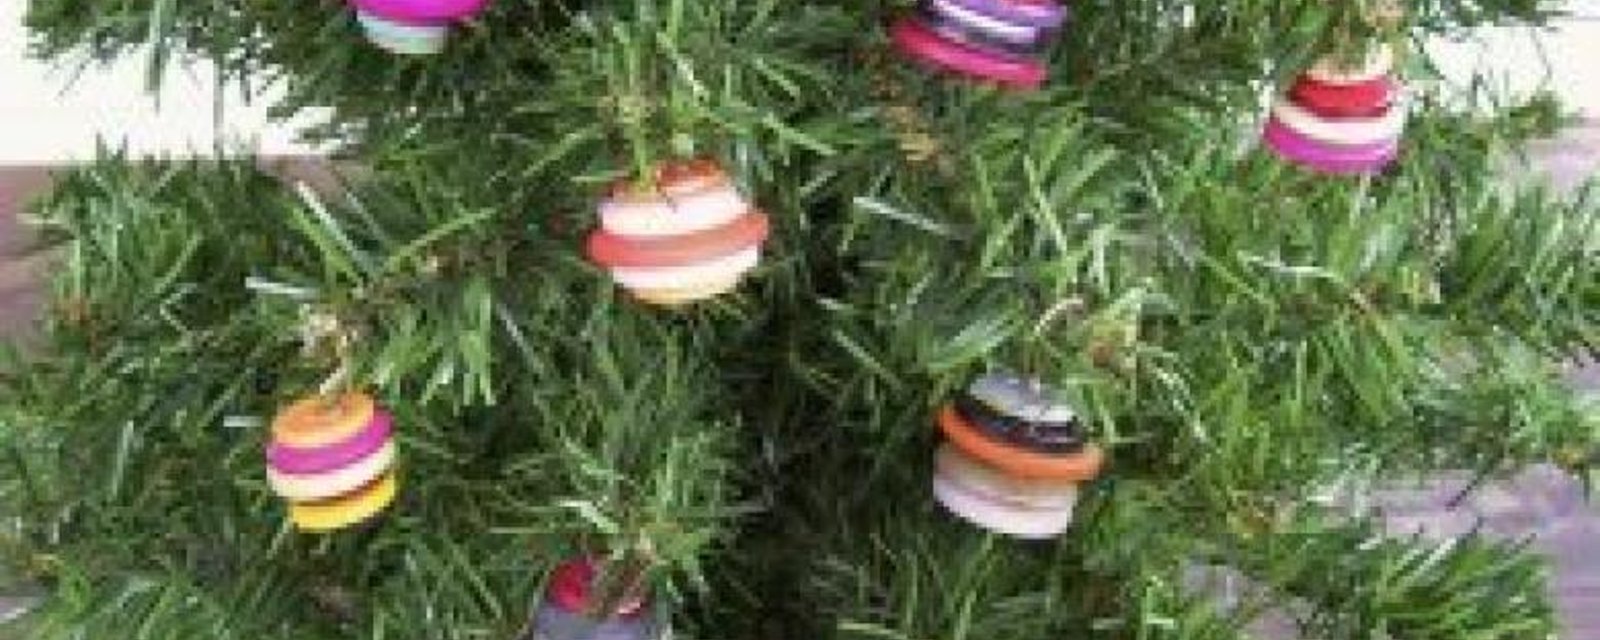 12 décorations de boutons! Noël en boutons! 